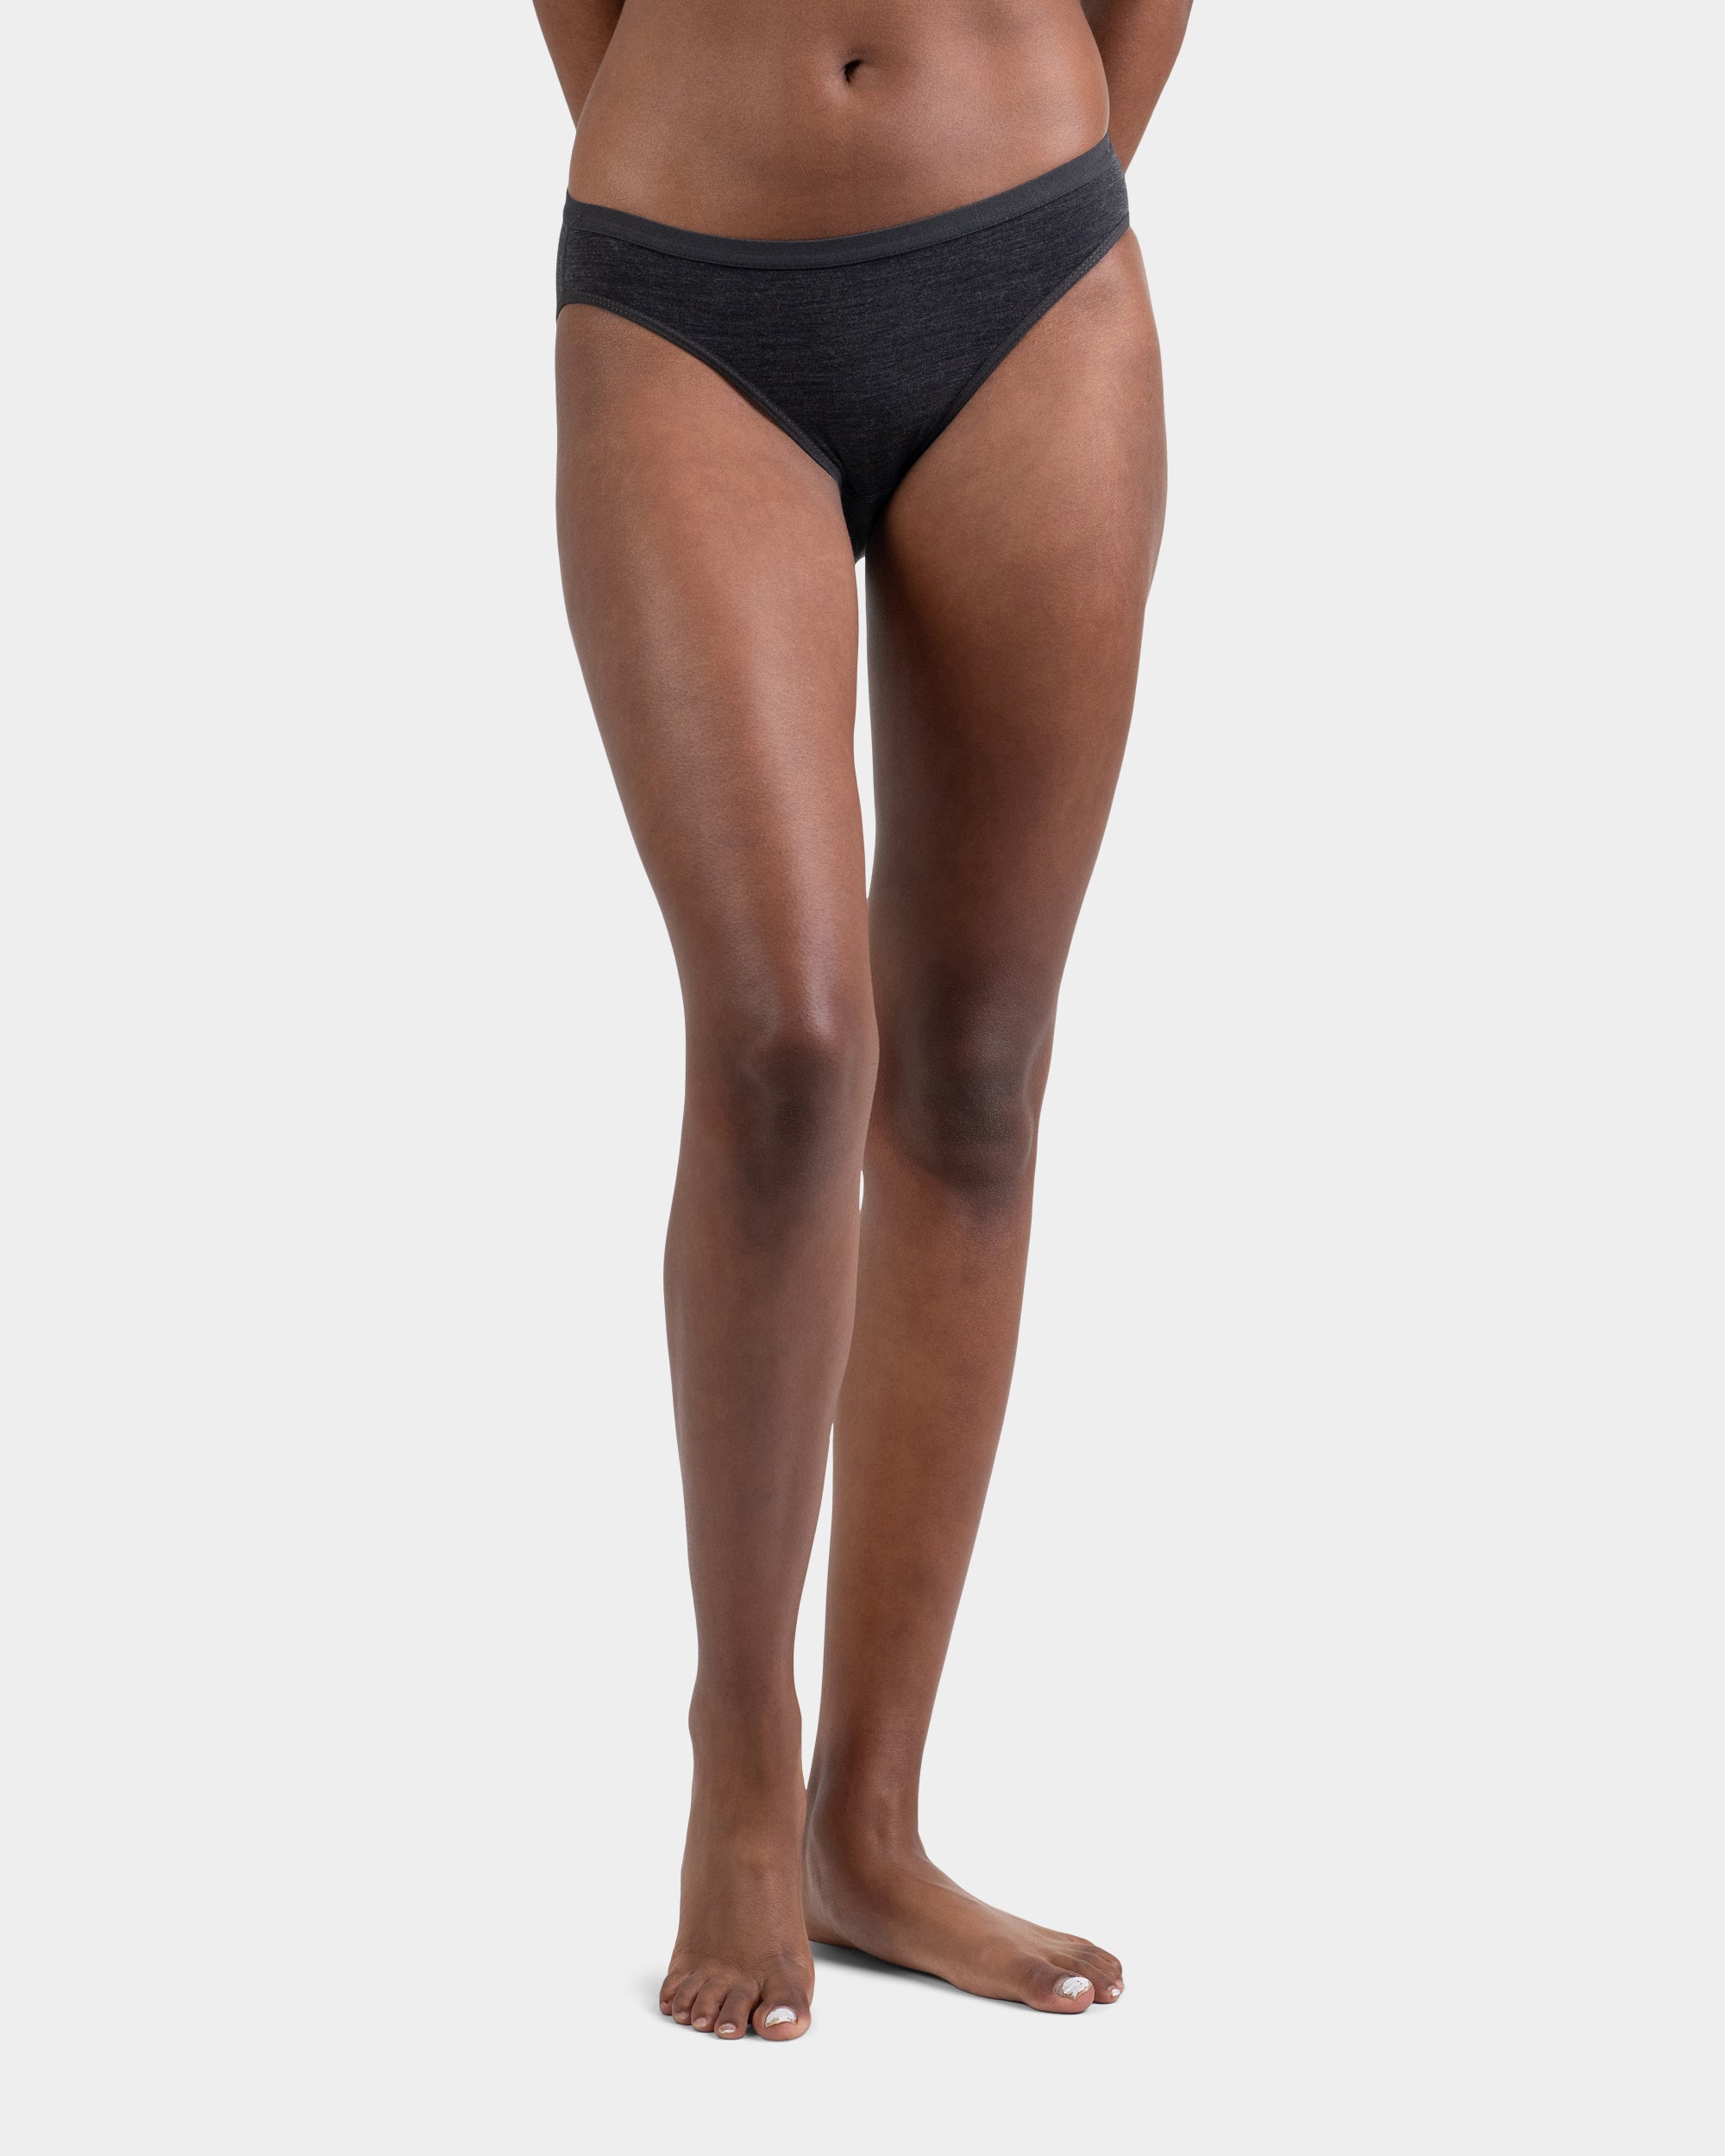  W MERINO BIKINI BOXED, black - women's underwear -  SMARTWOOL - 26.78 € - outdoorové oblečení a vybavení shop